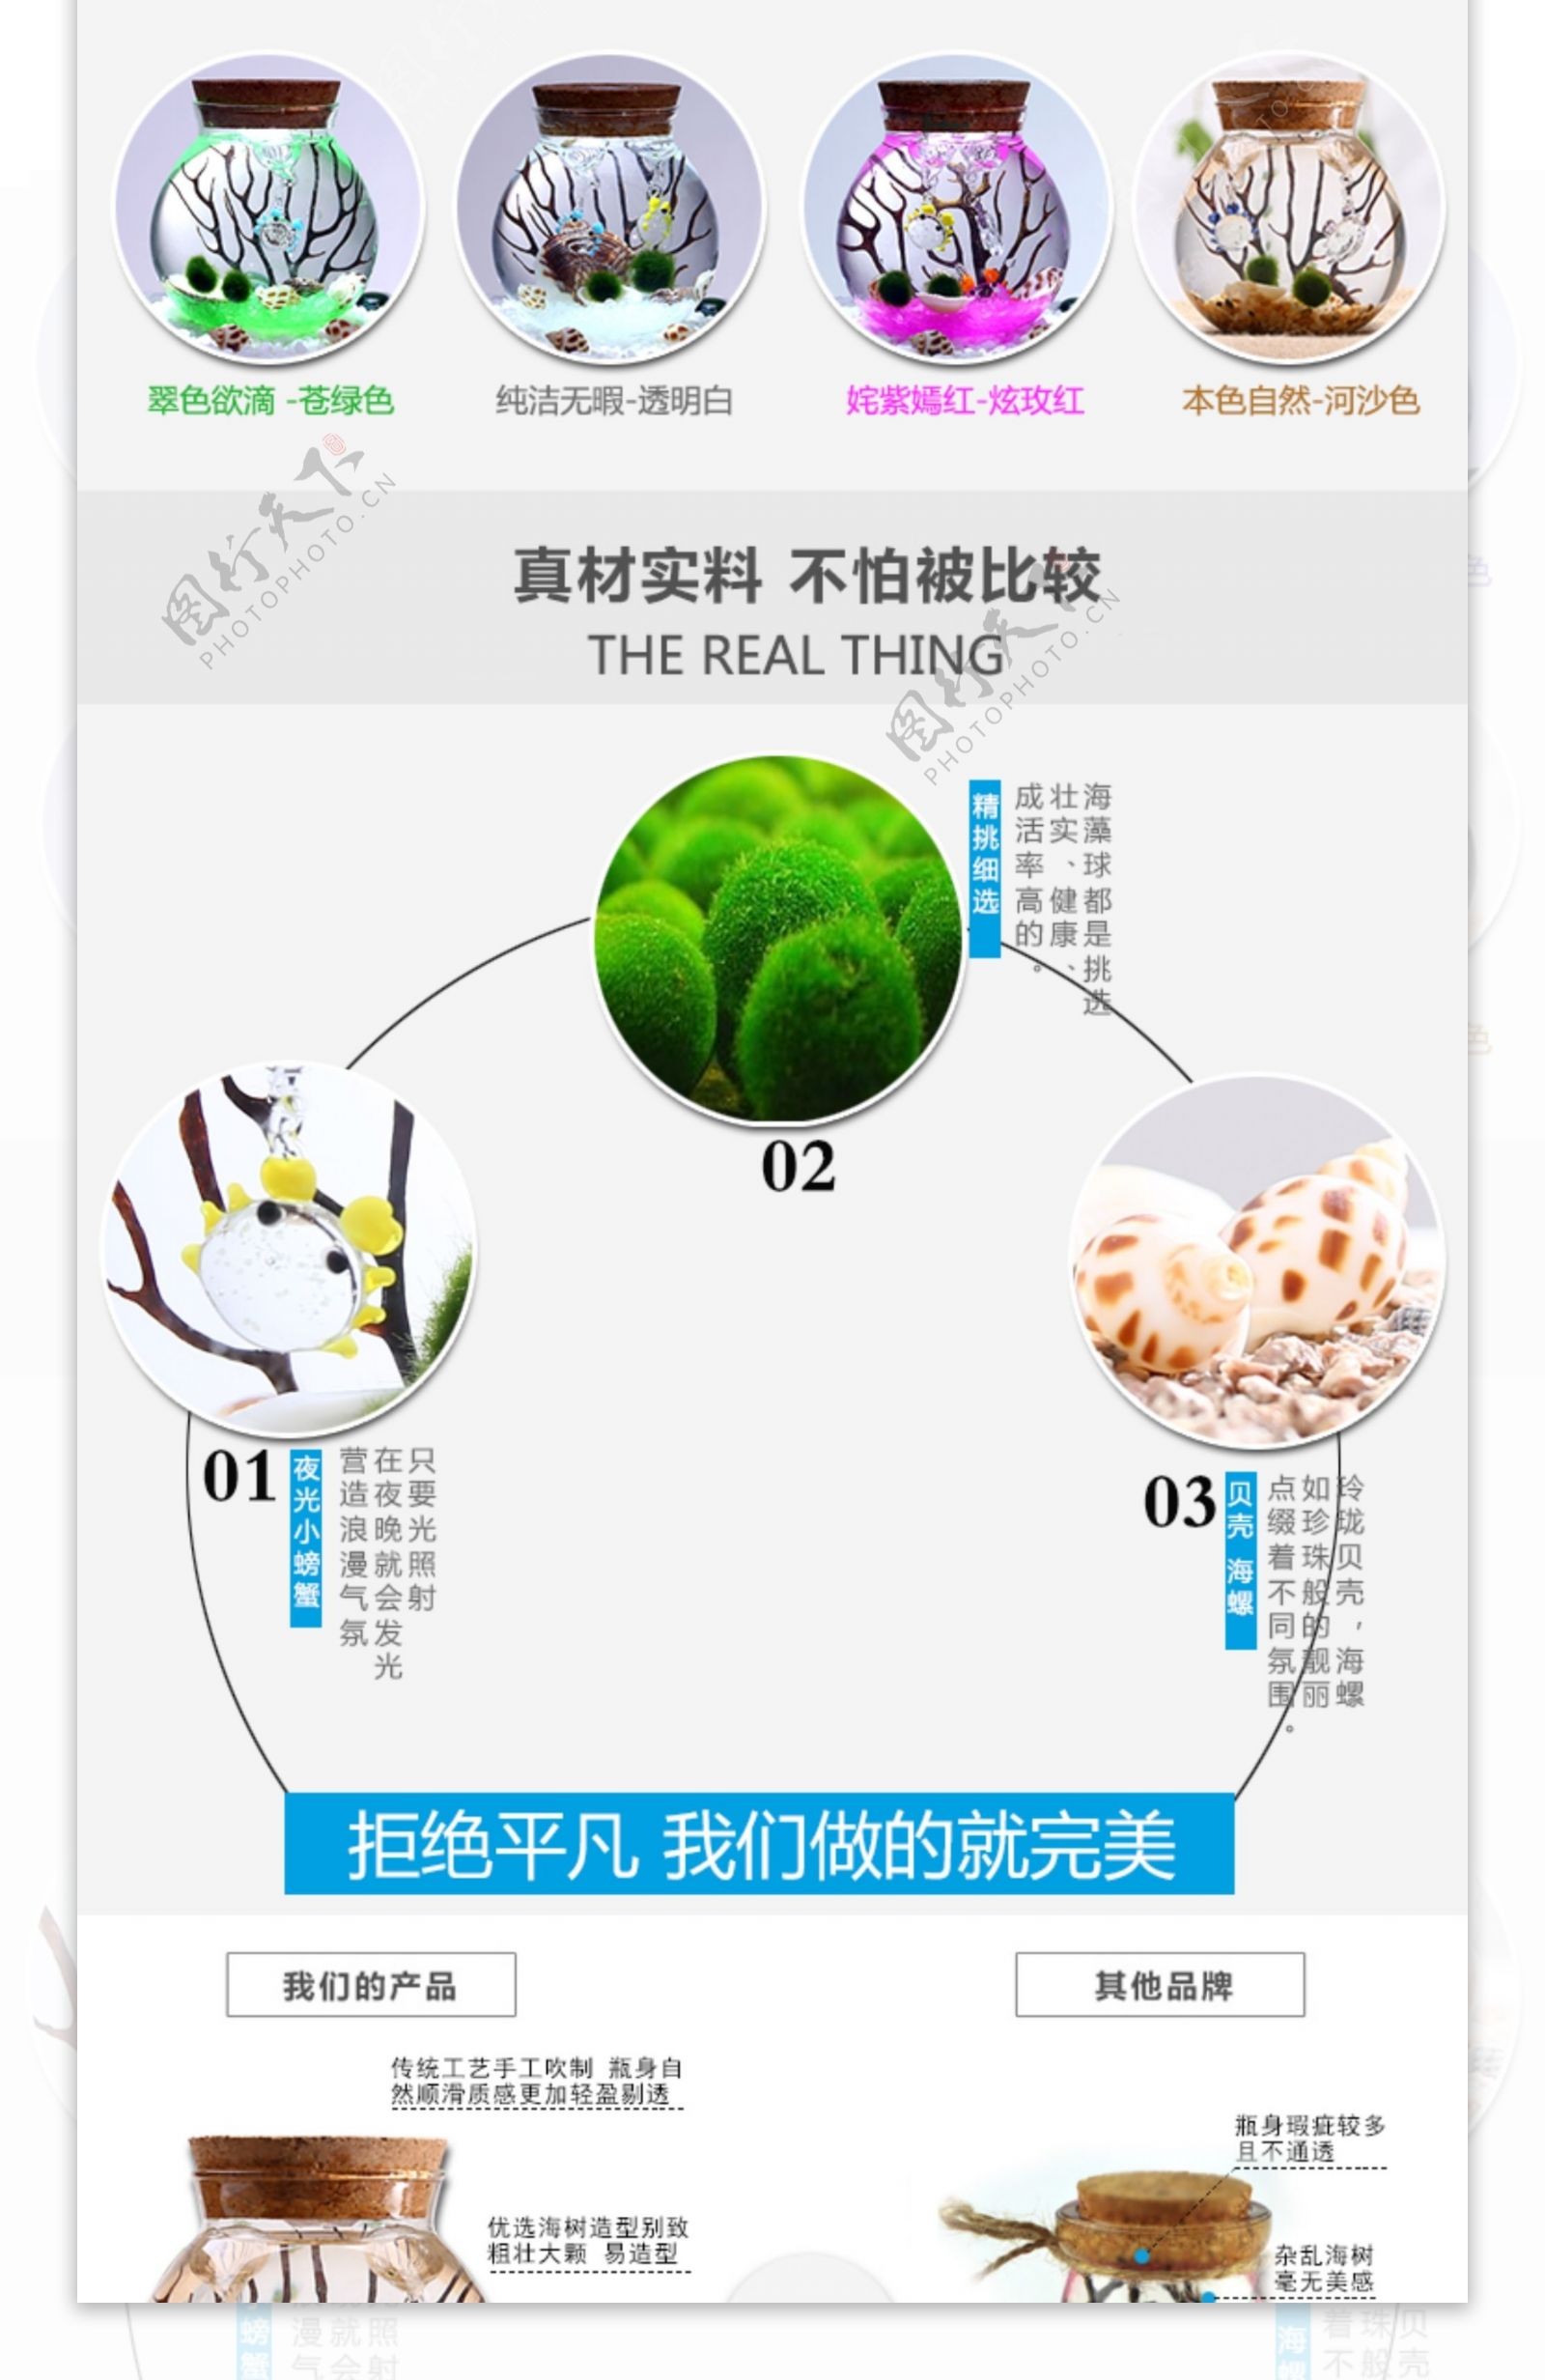 海藻球详情页创意迷你植物幸福海藻球